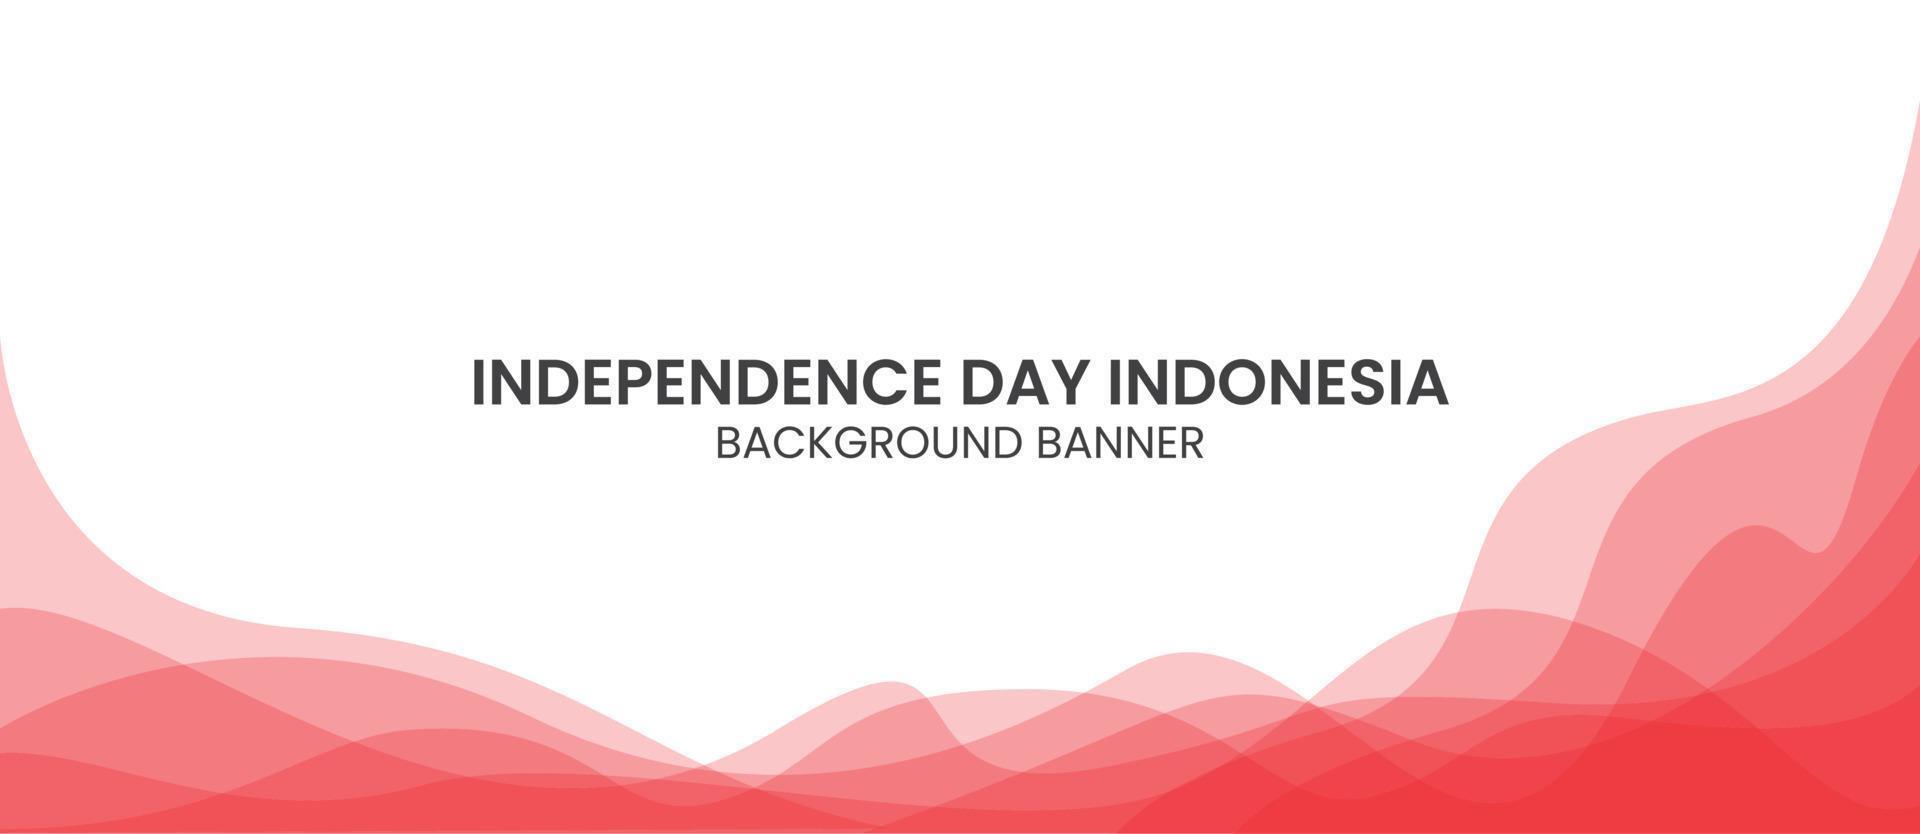 Hintergrundbanner zum 77. Unabhängigkeitstag Indonesiens, geeignet für Website und Social-Media-Plattform vektor